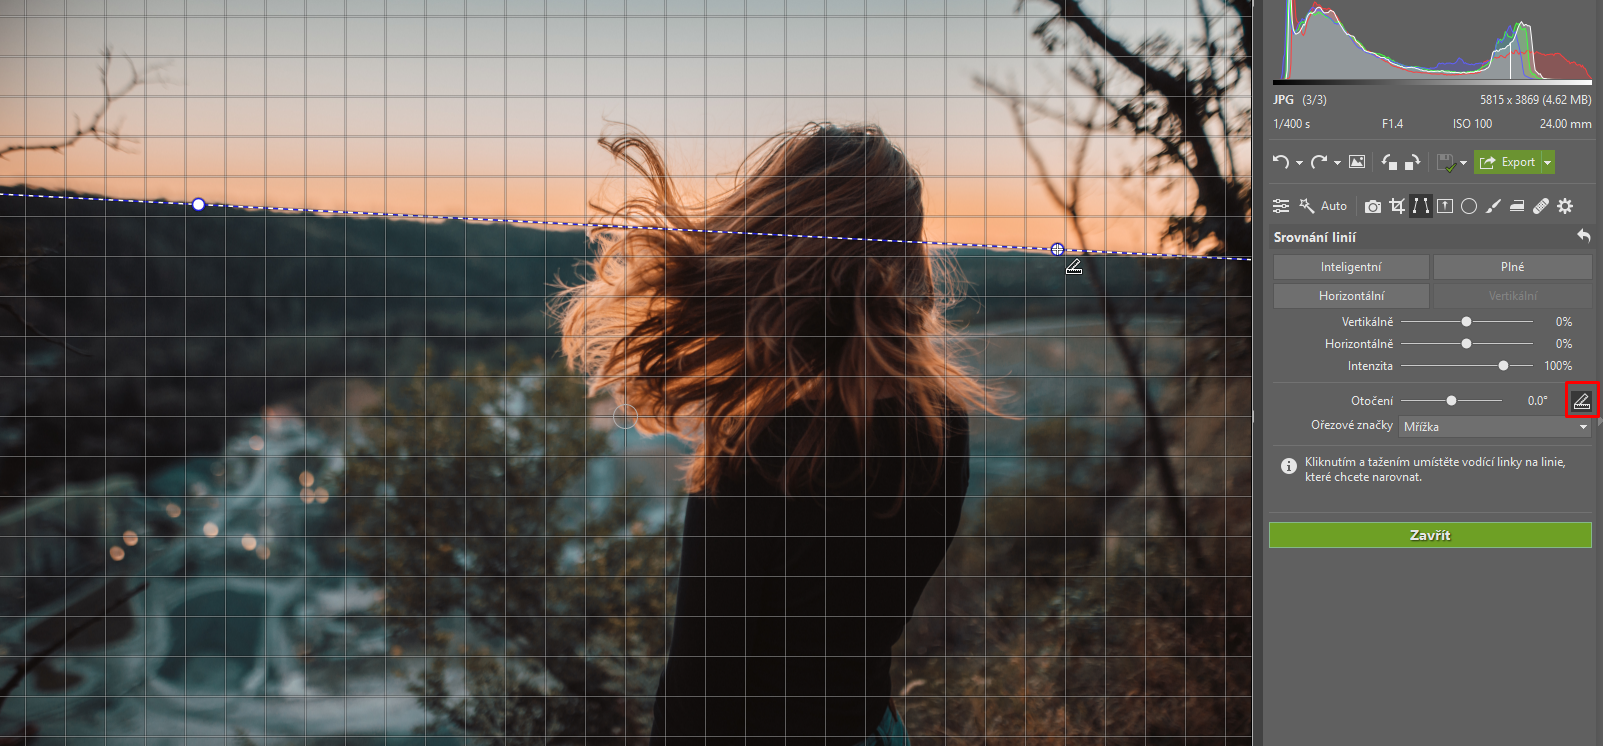 6 nejčastějších problémů s fotkami a jak je vyřešit - srovnání horizontu